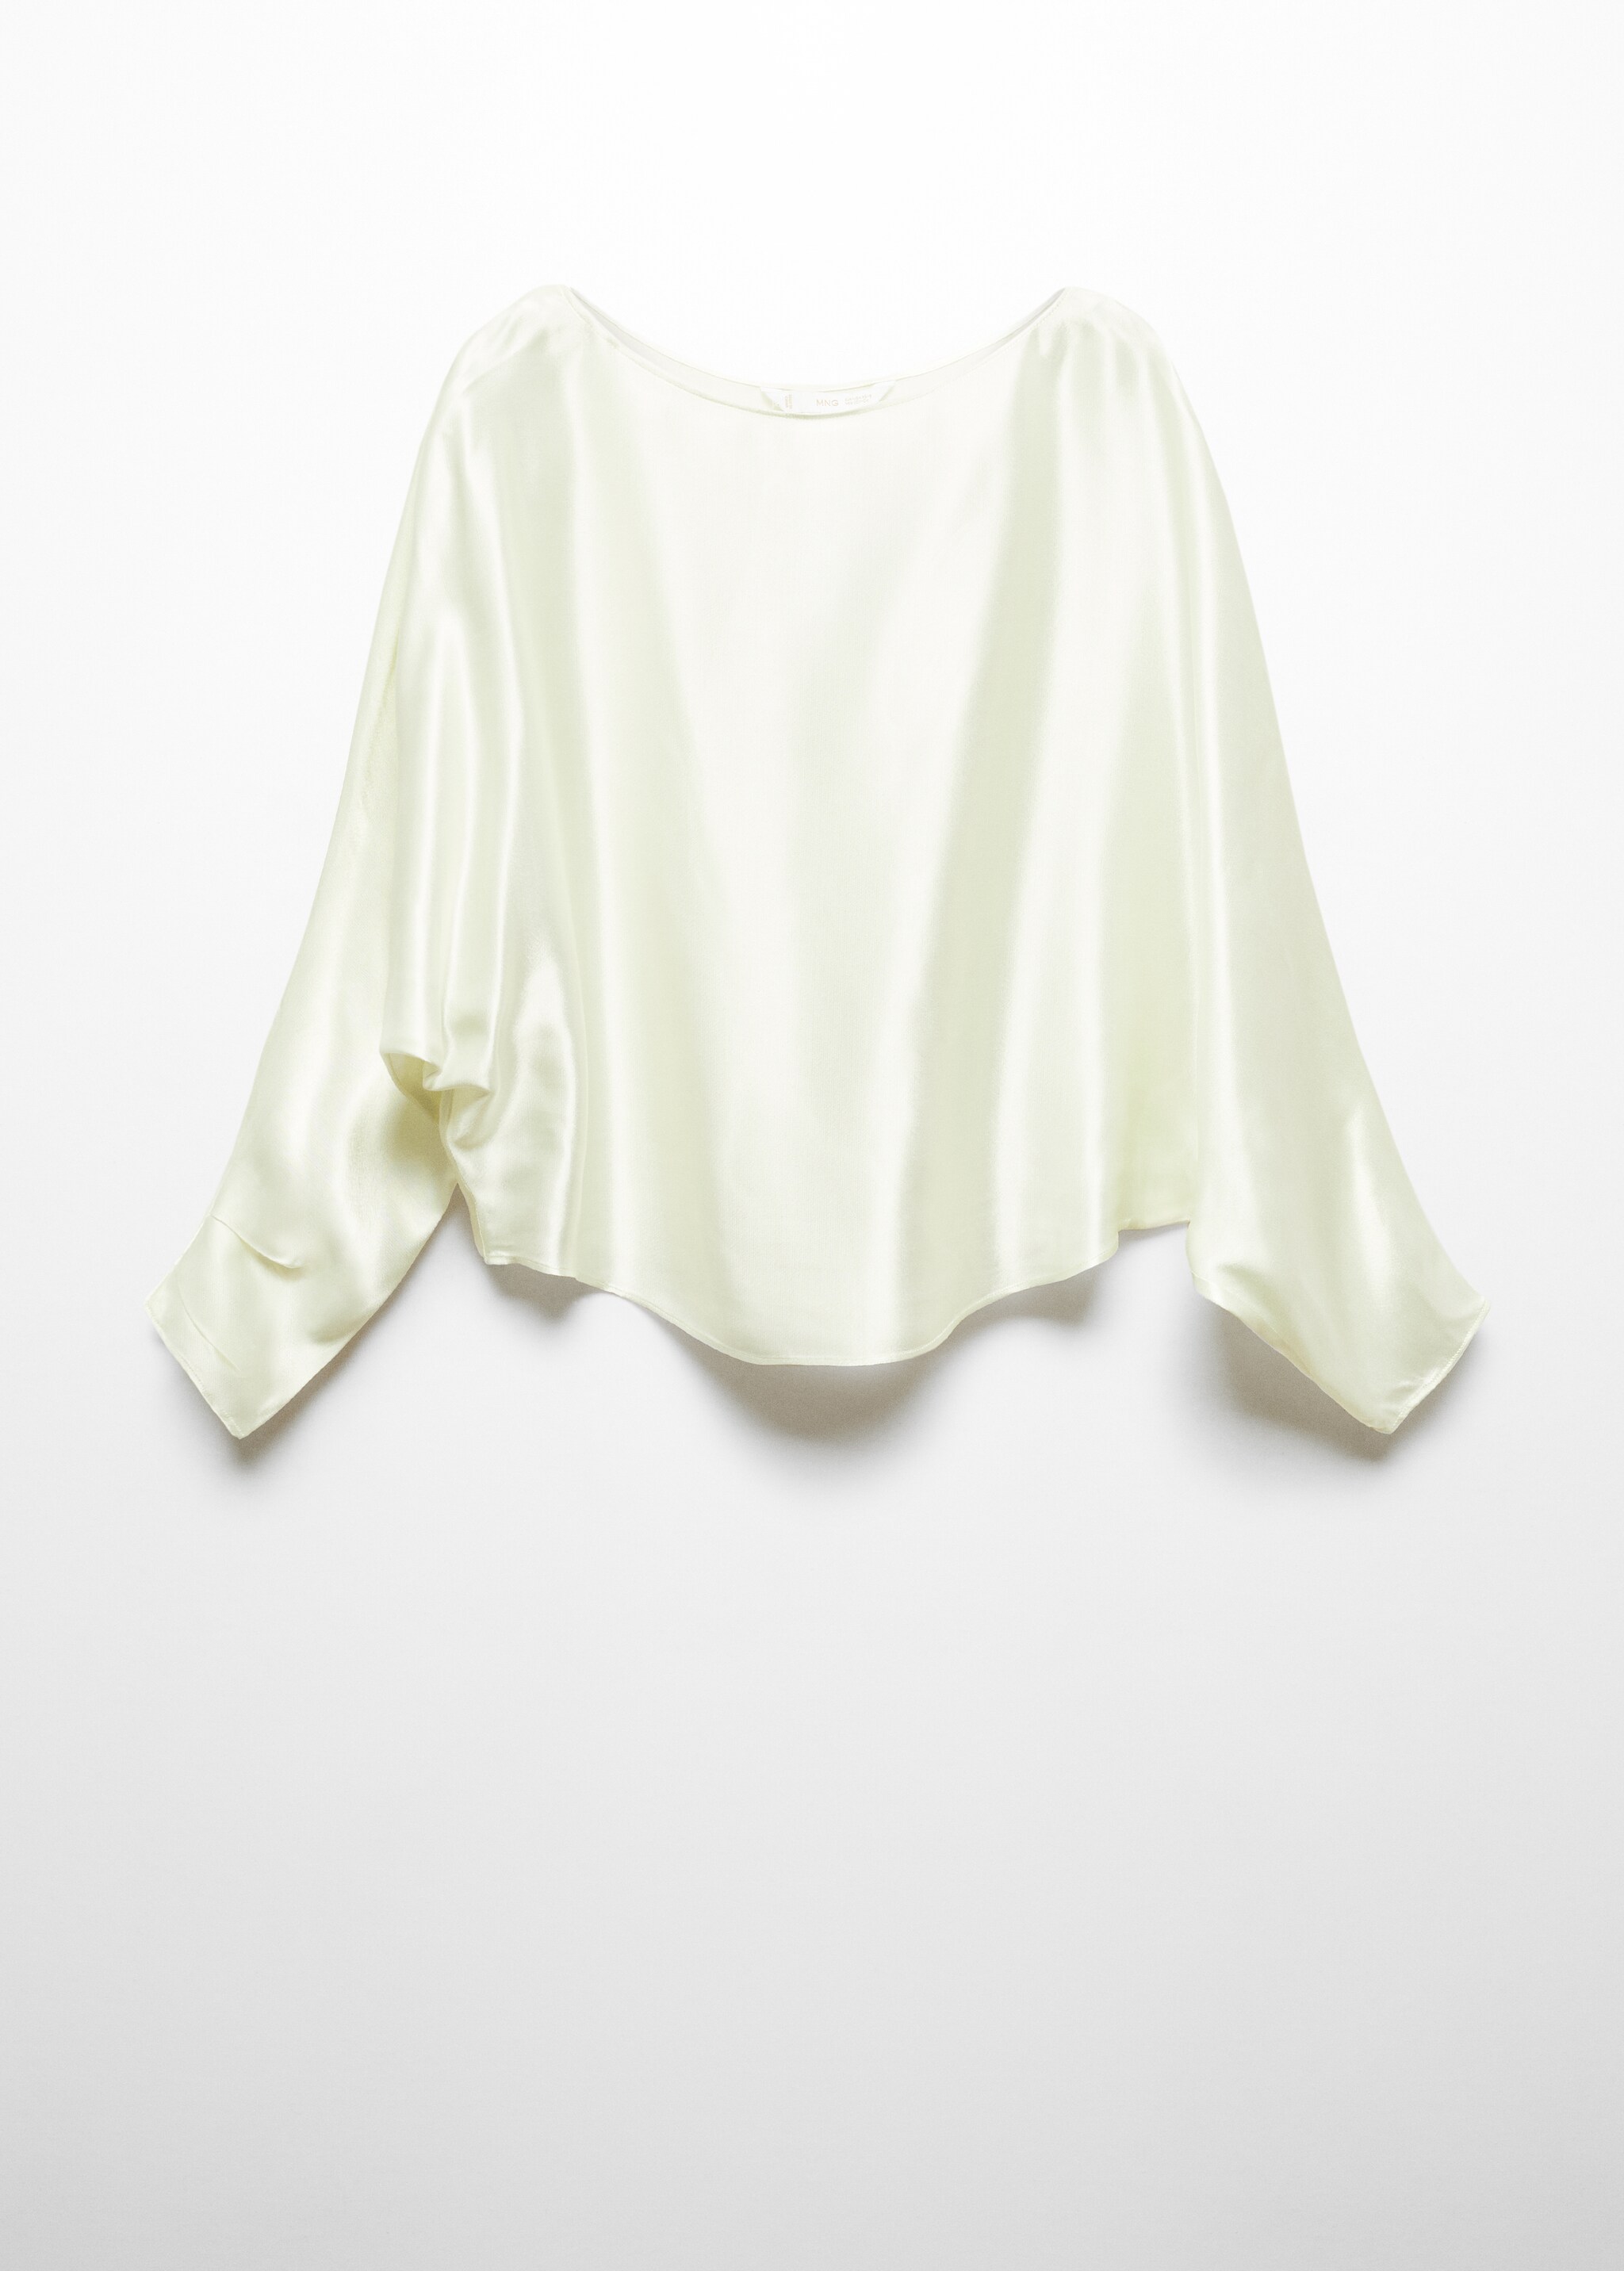 Атласная блузка в стиле накидки  - Изделие без модели